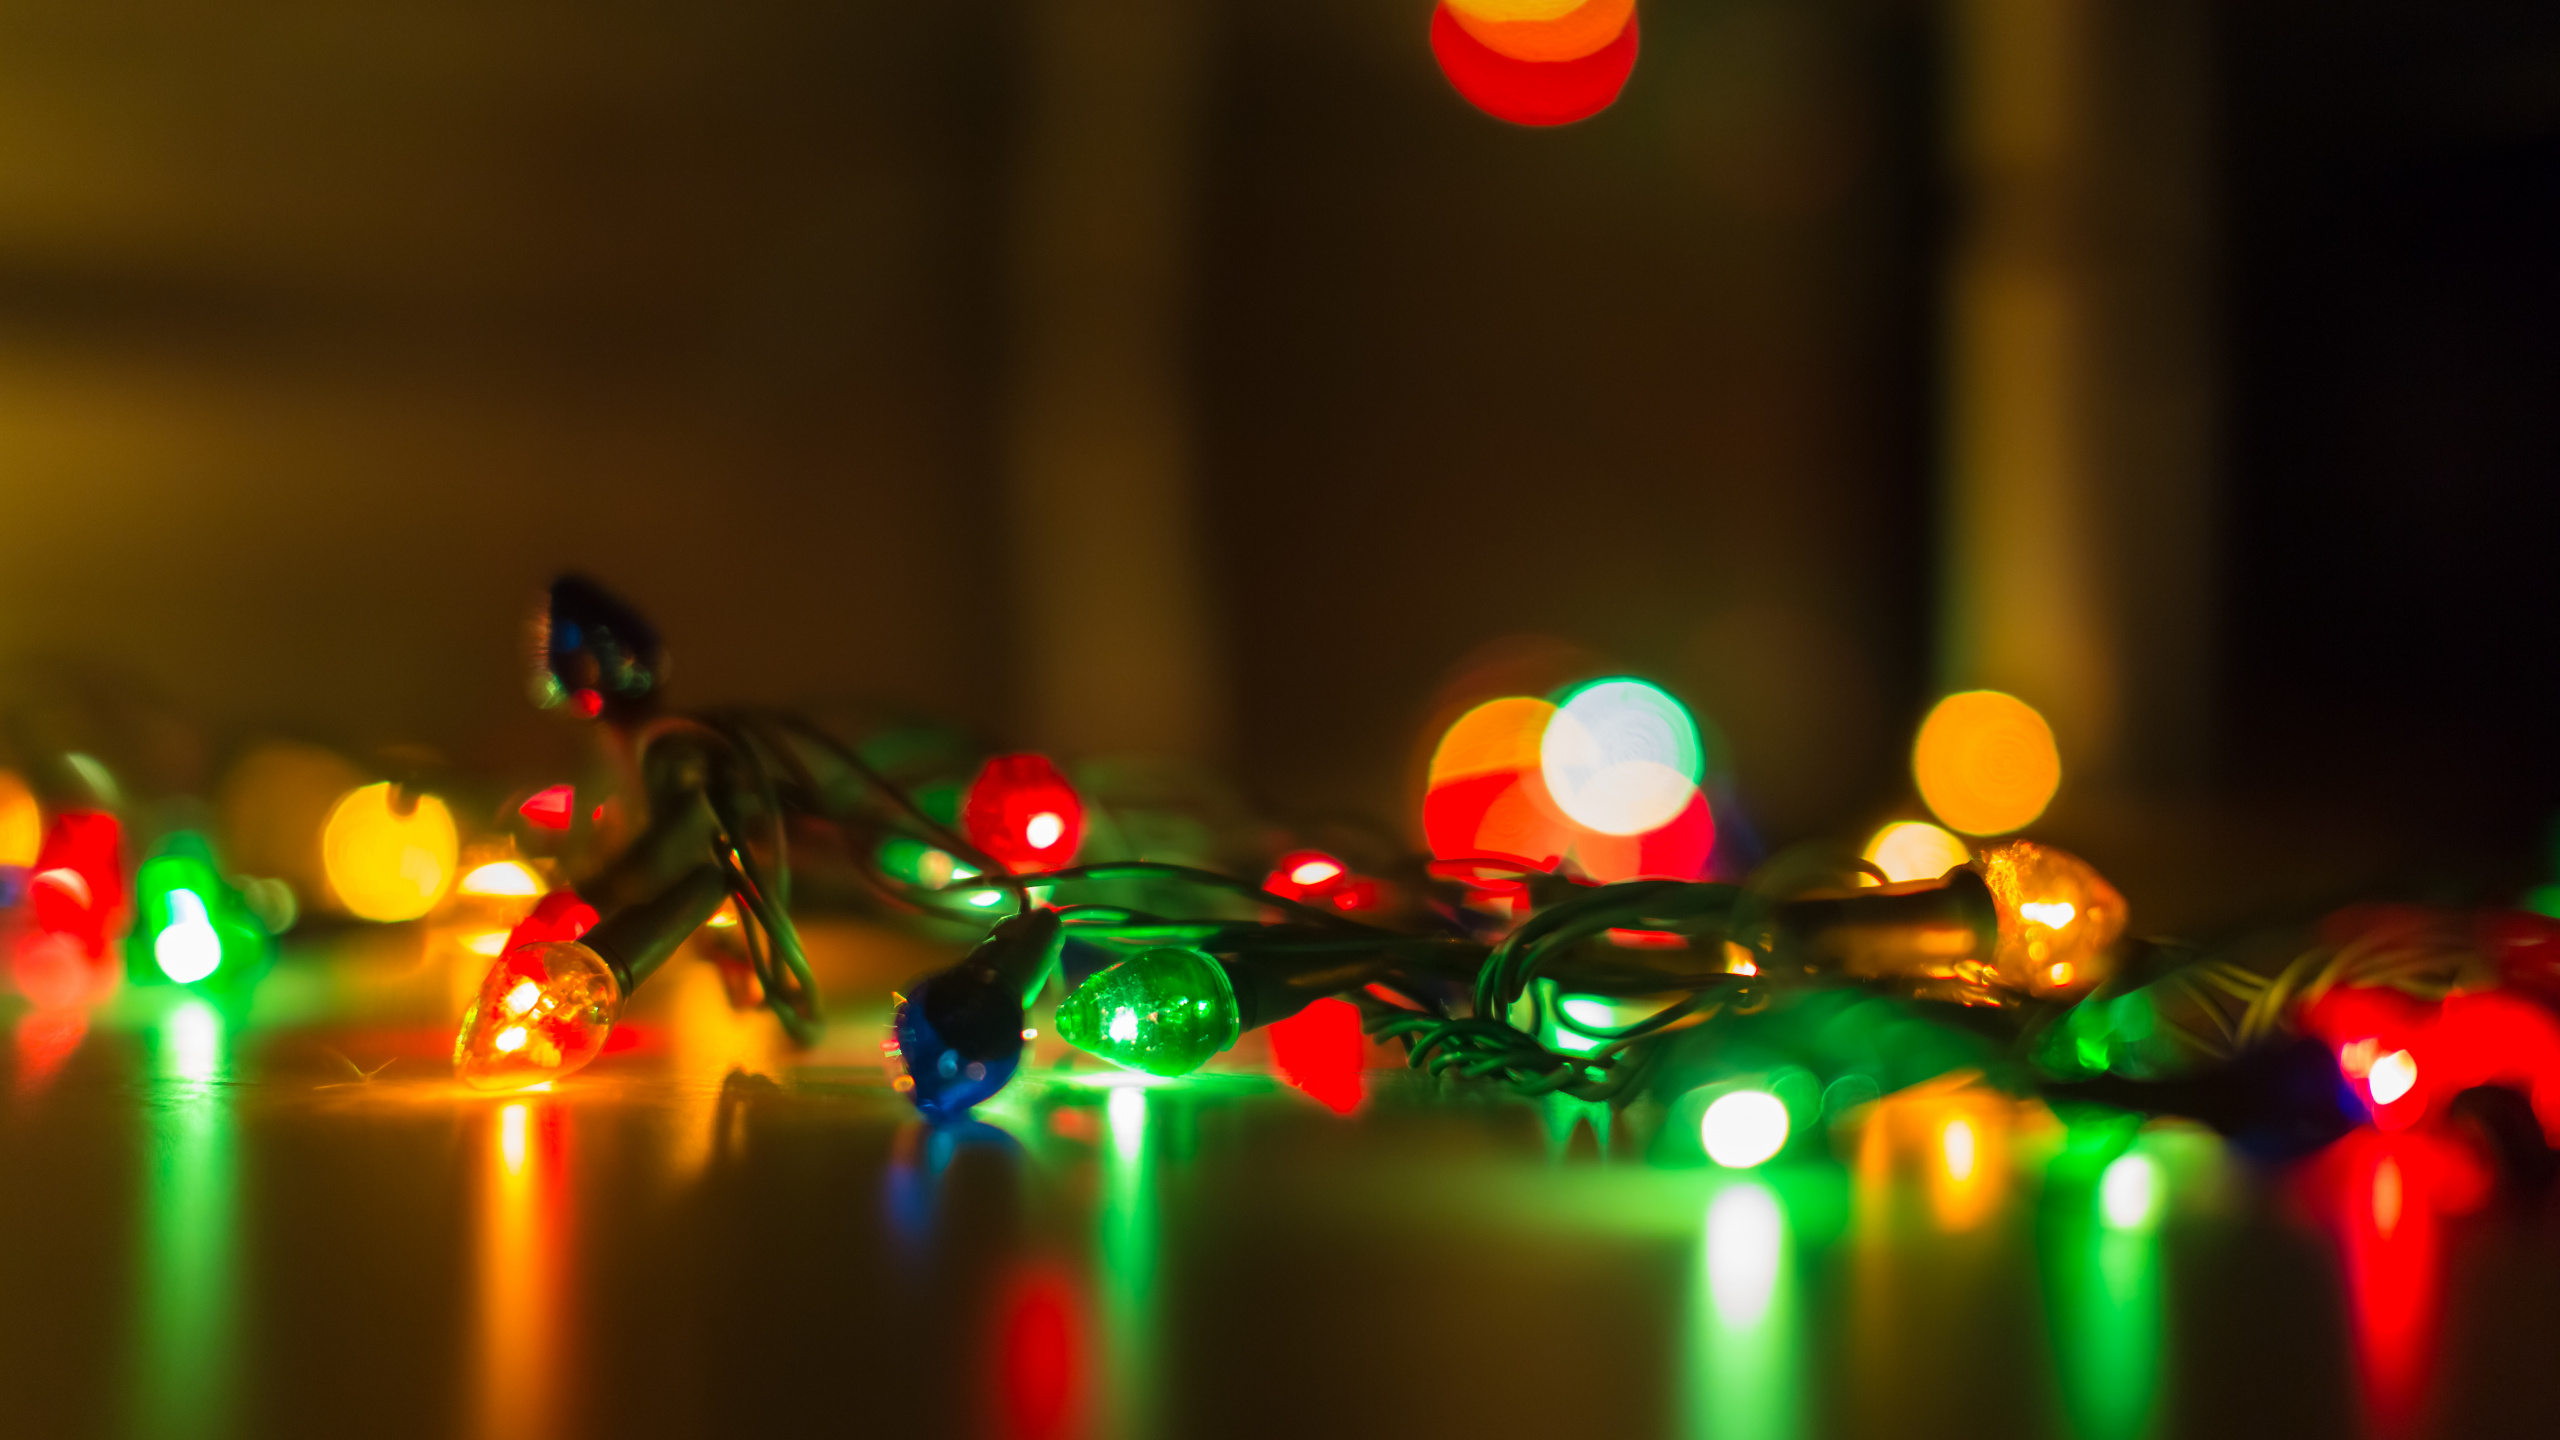 Weihnachtsbeleuchtung, Girlande, Weihnachten, Licht, Gelb. Wallpaper in 2560x1440 Resolution